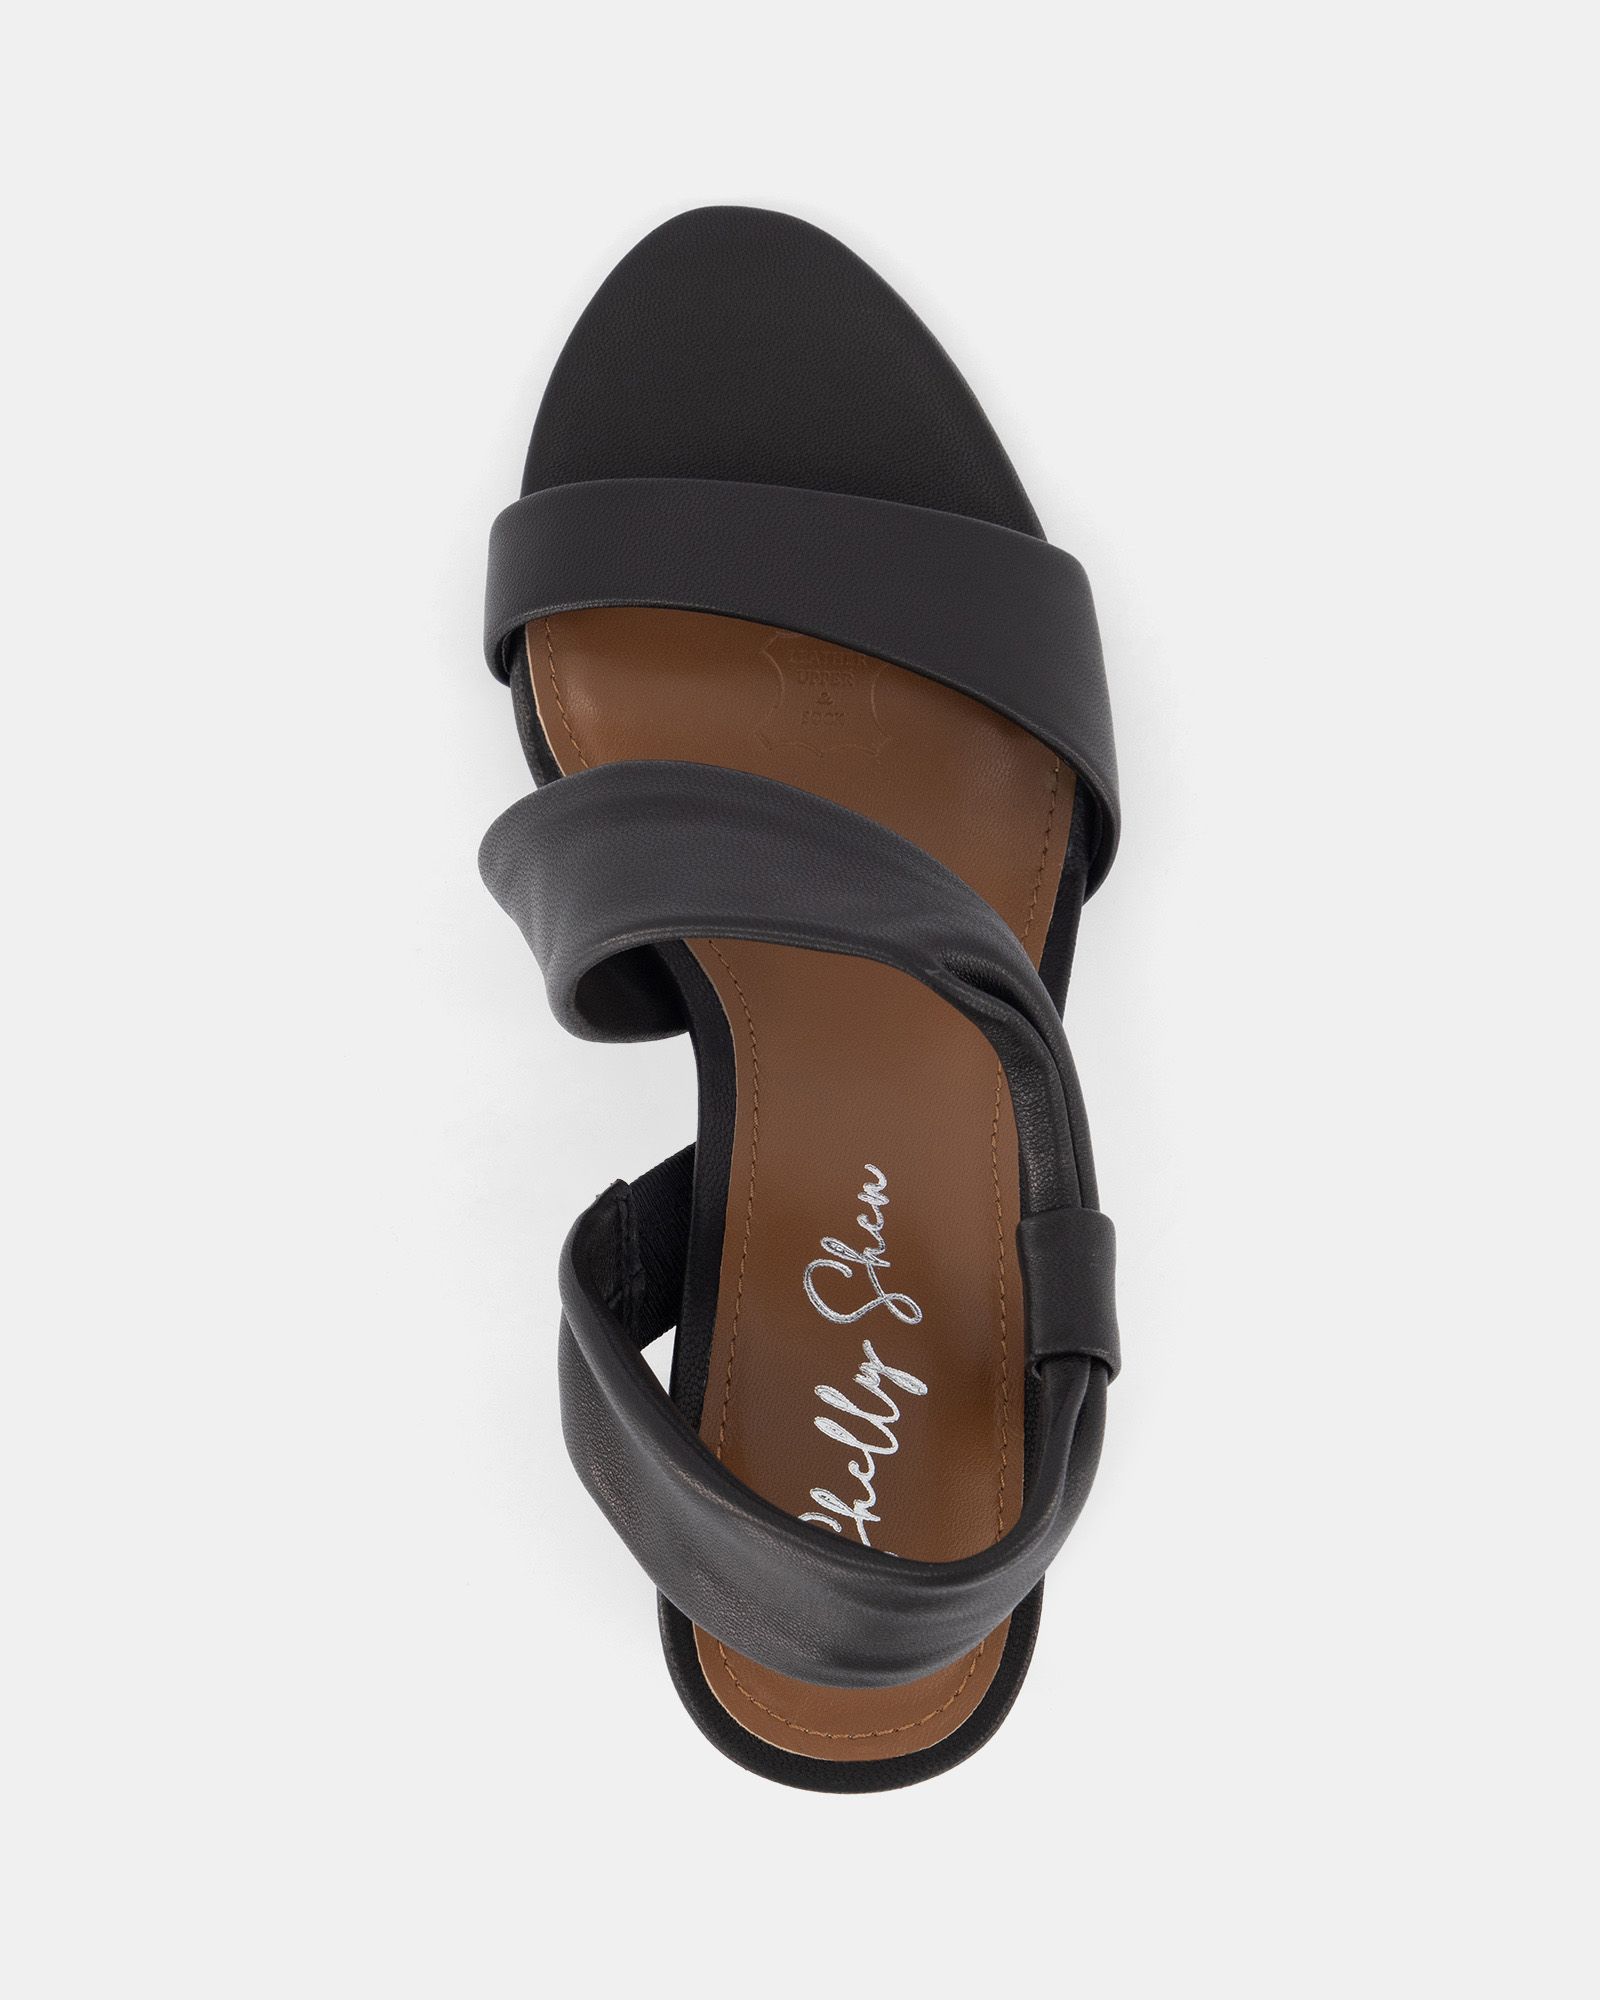 Buy MABEL Black heels Online at Shoe Connection